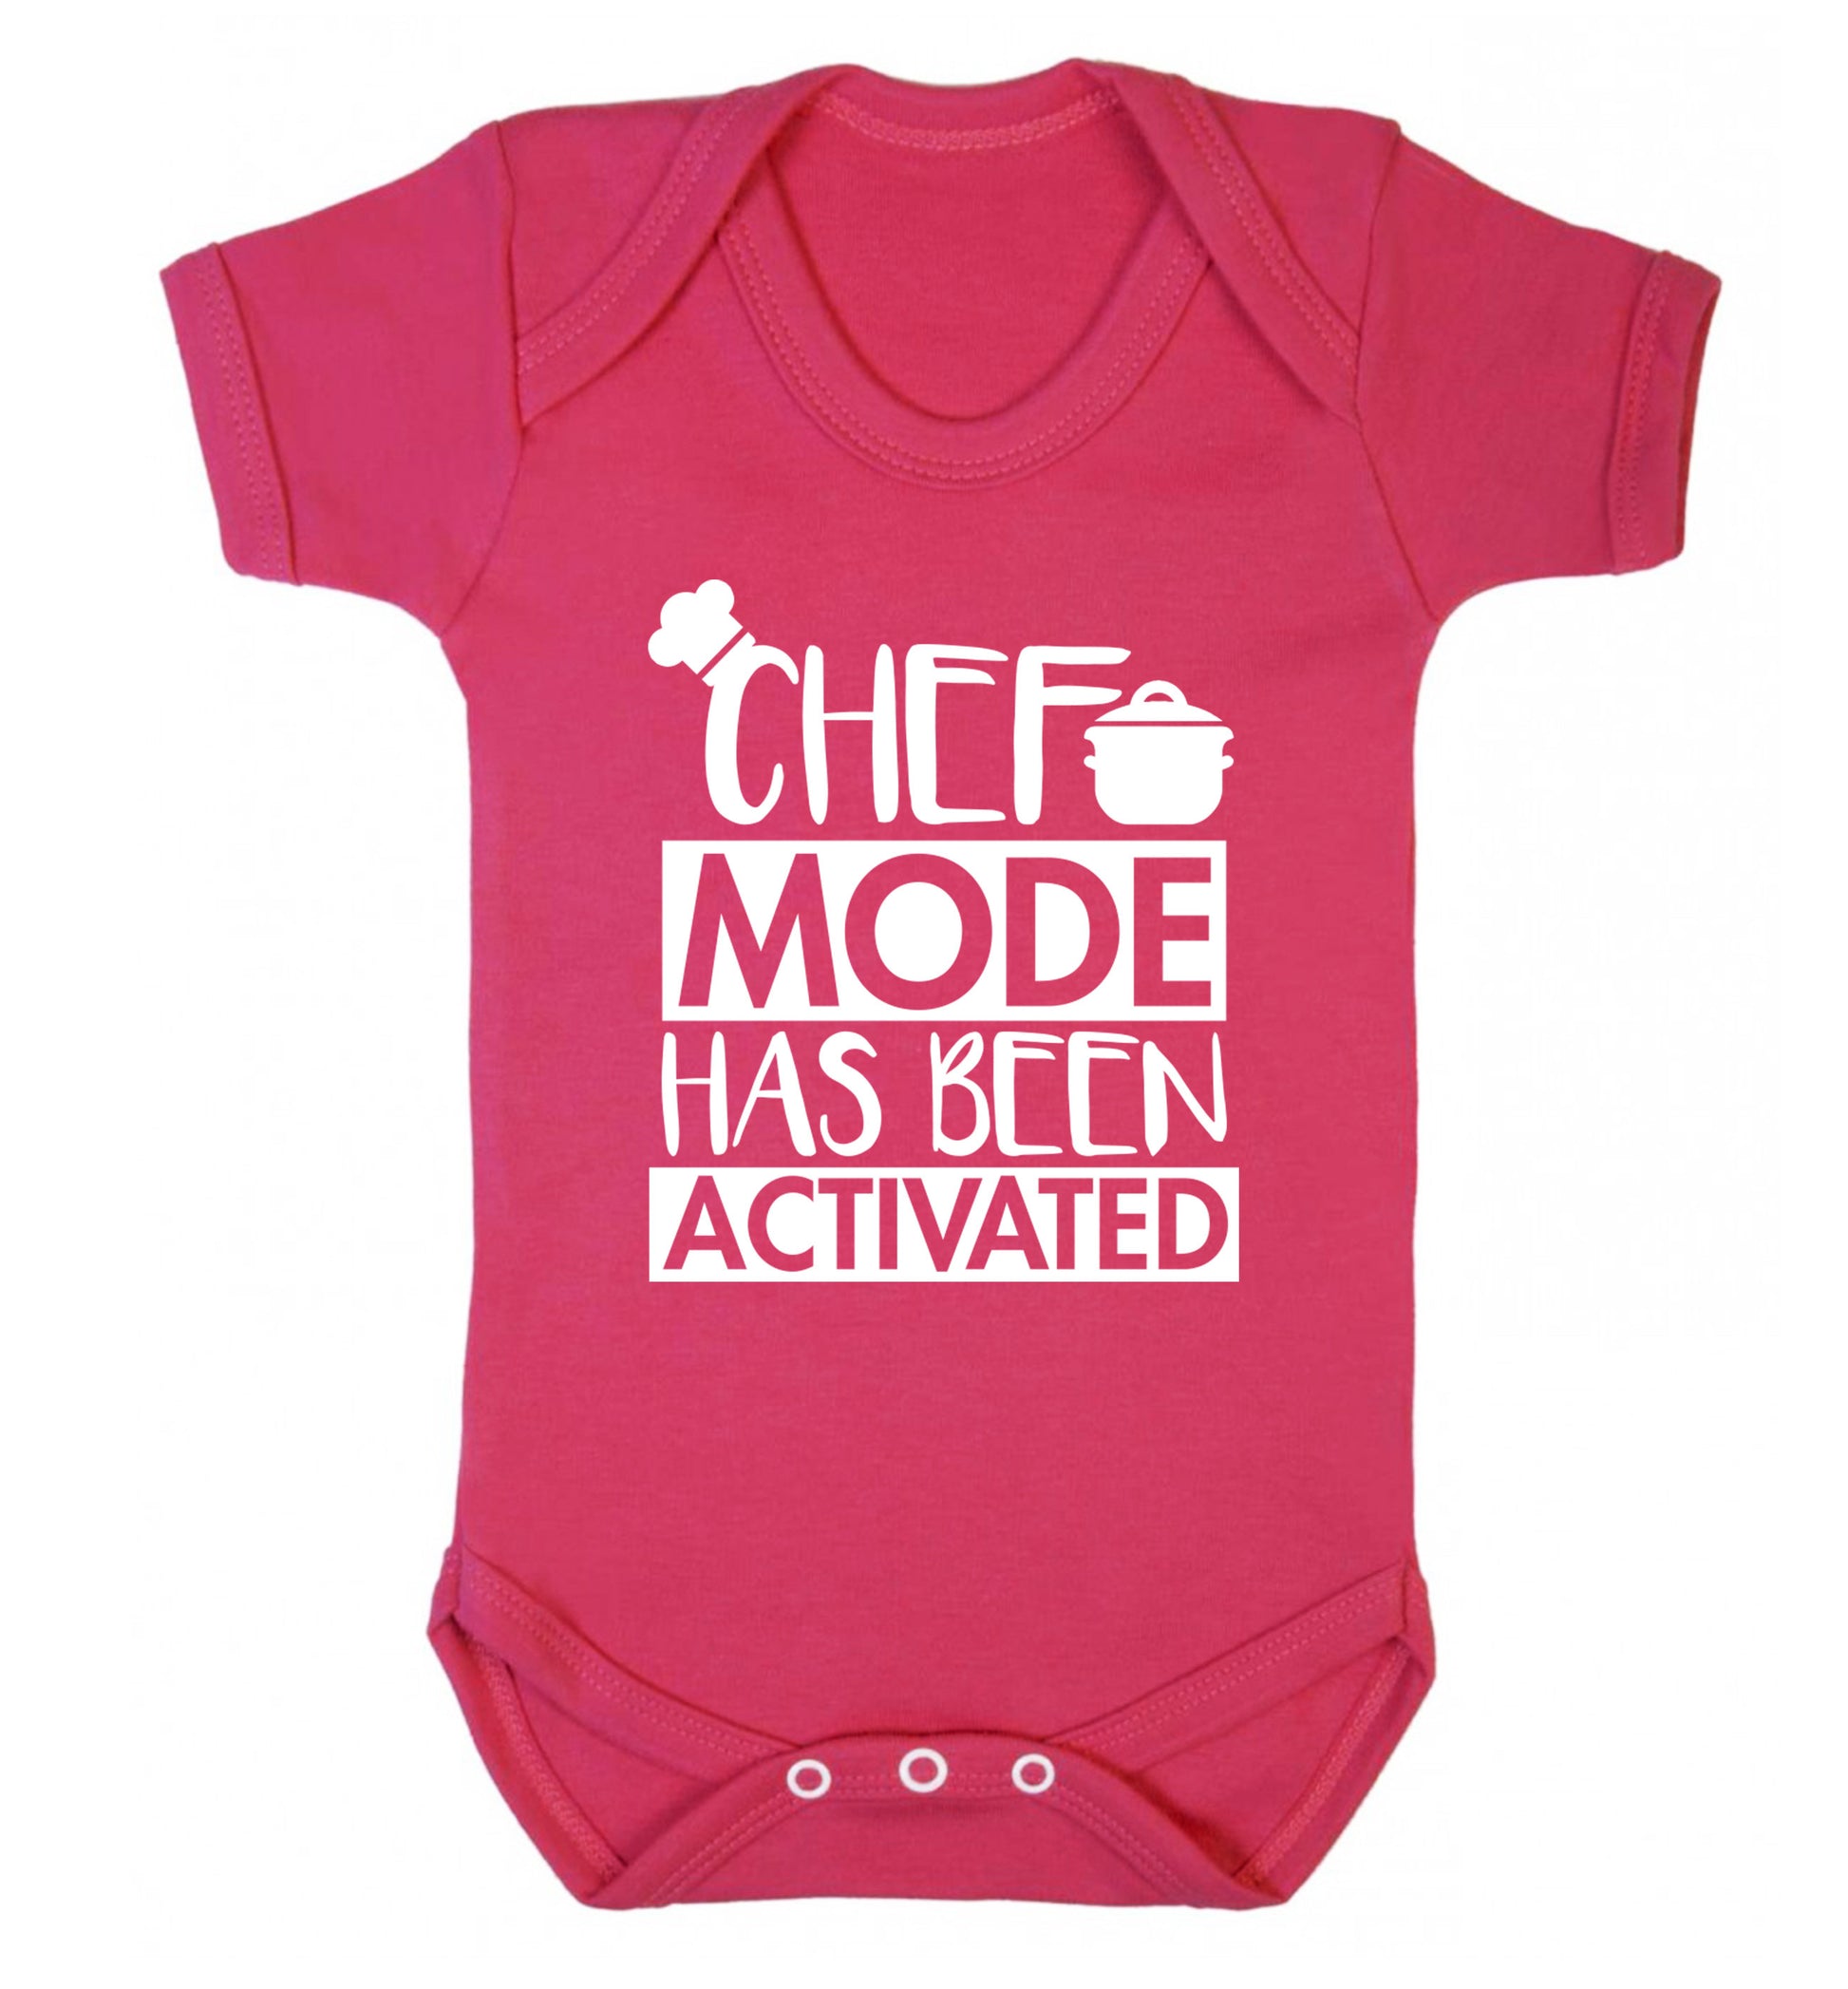 Chef mode has been activated Baby Vest dark pink 18-24 months